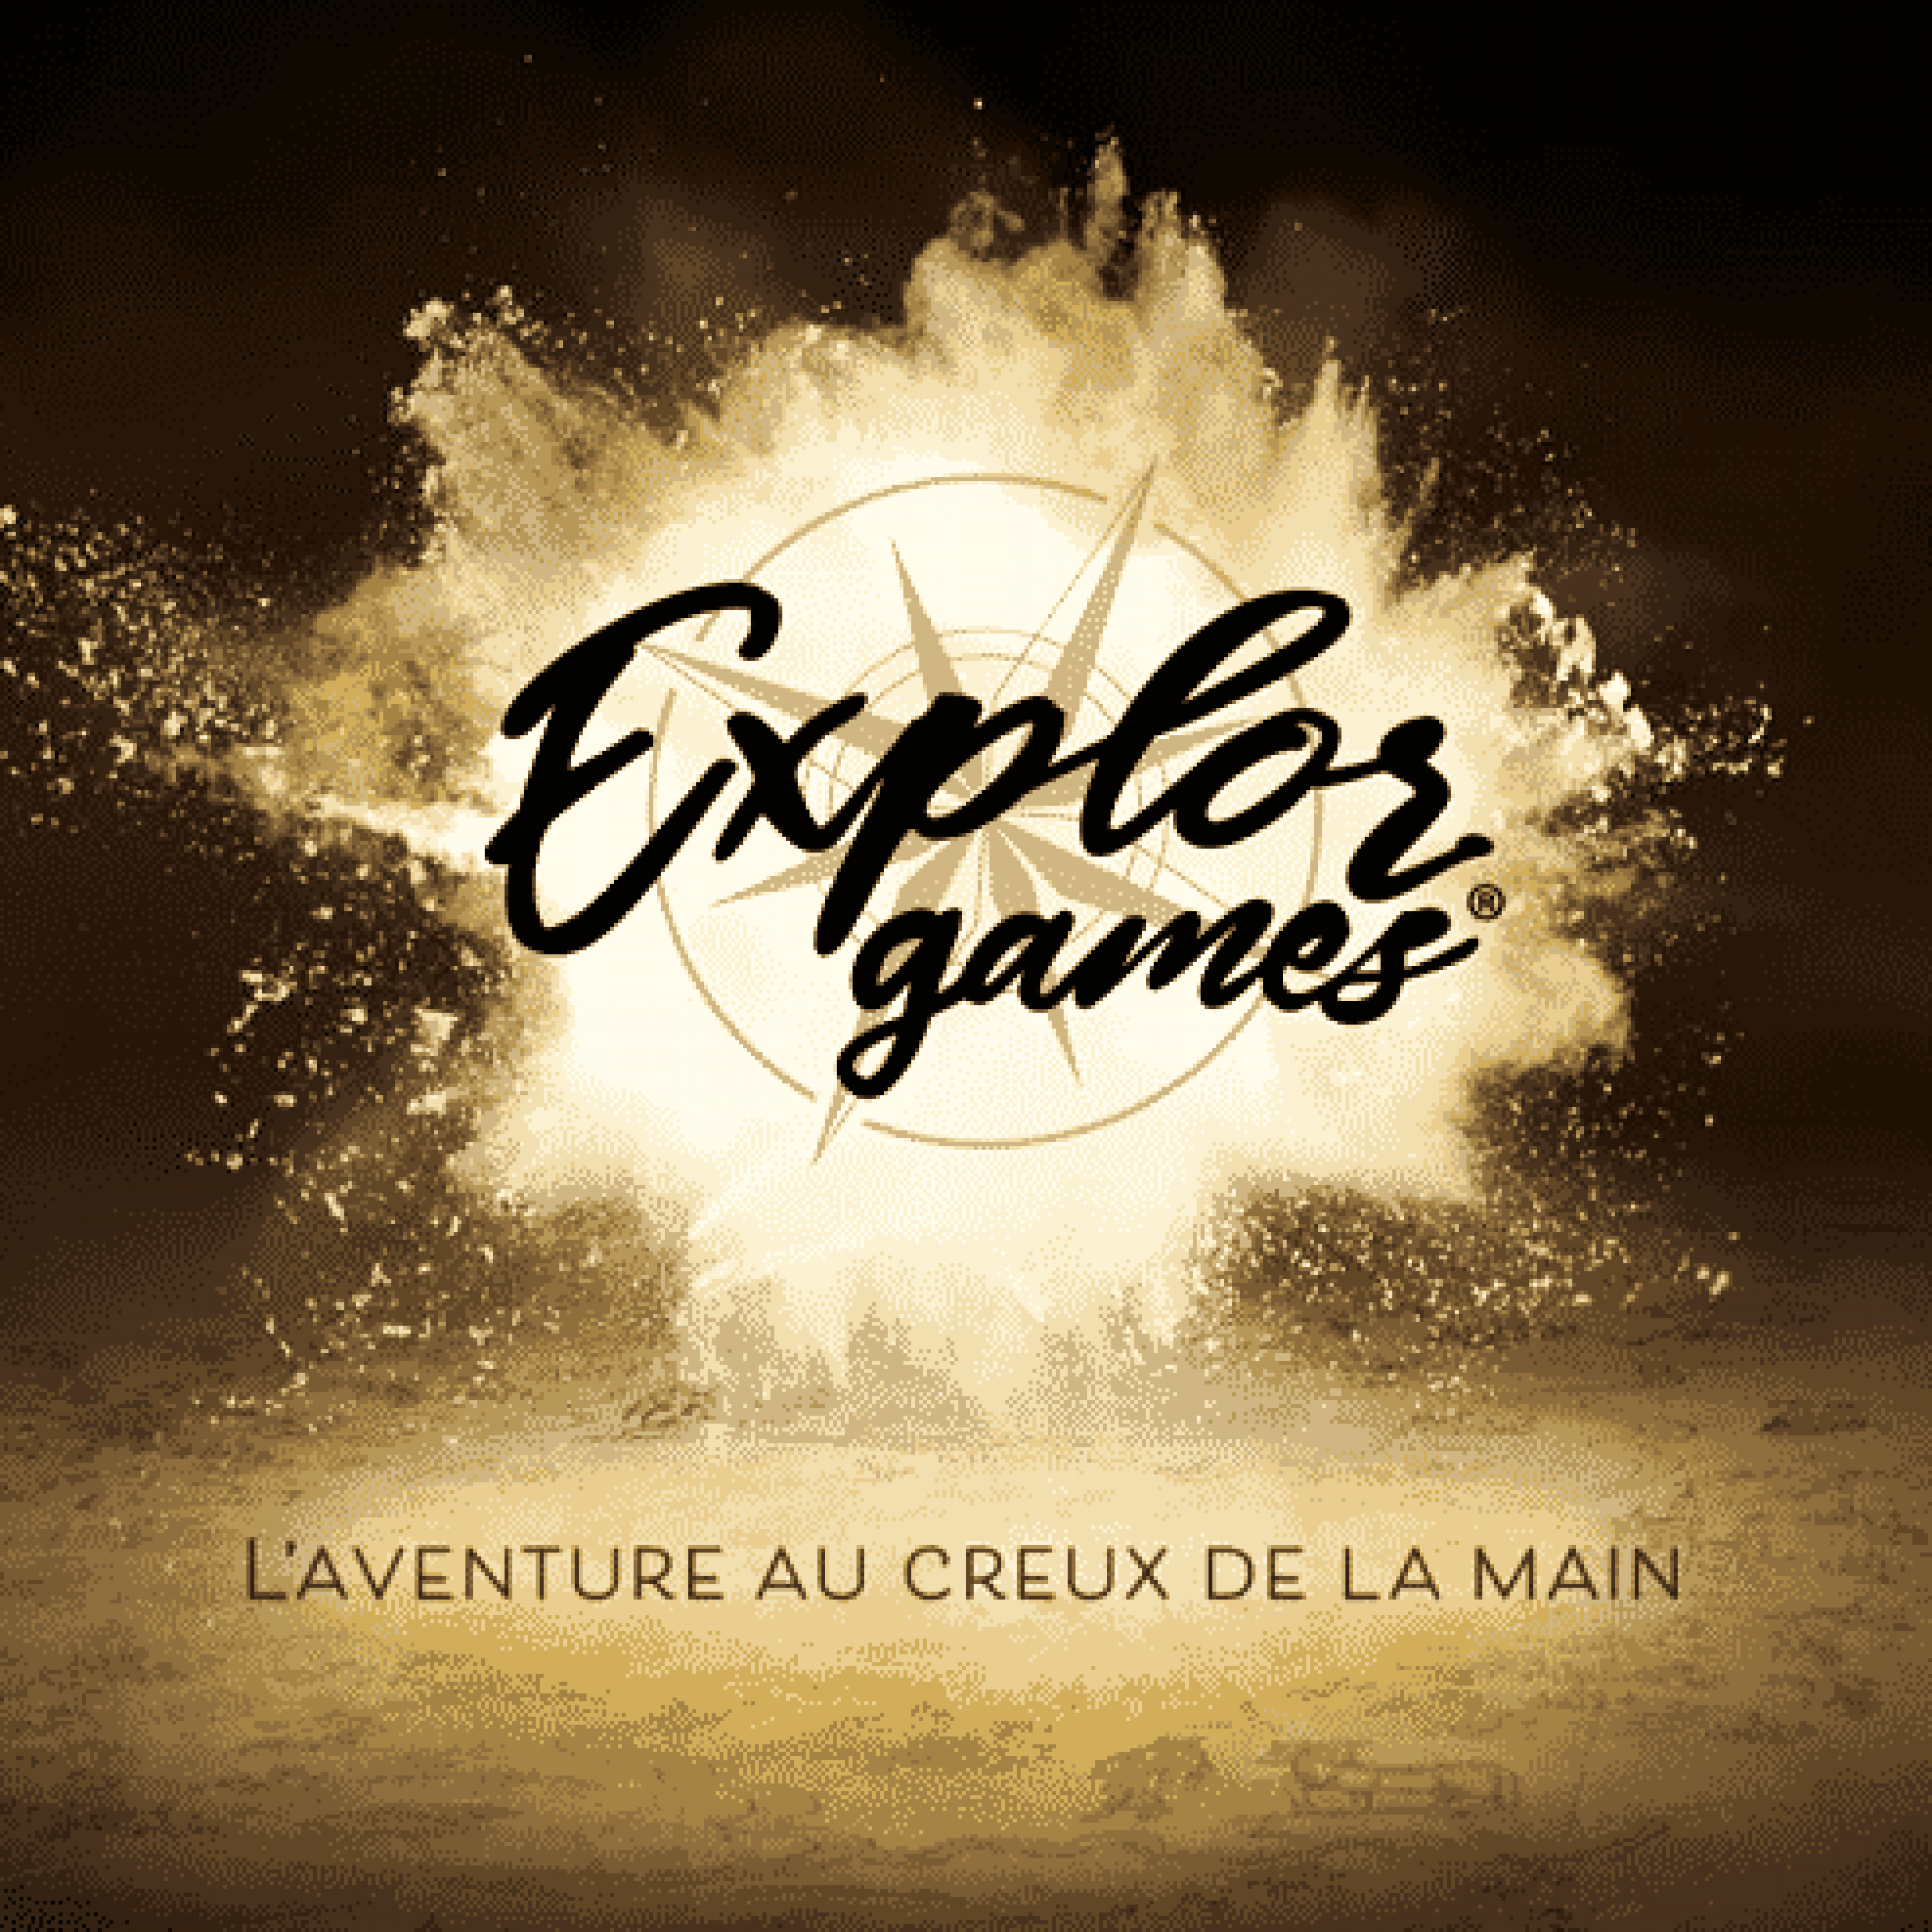 Catalogue-Explor-Games®-1